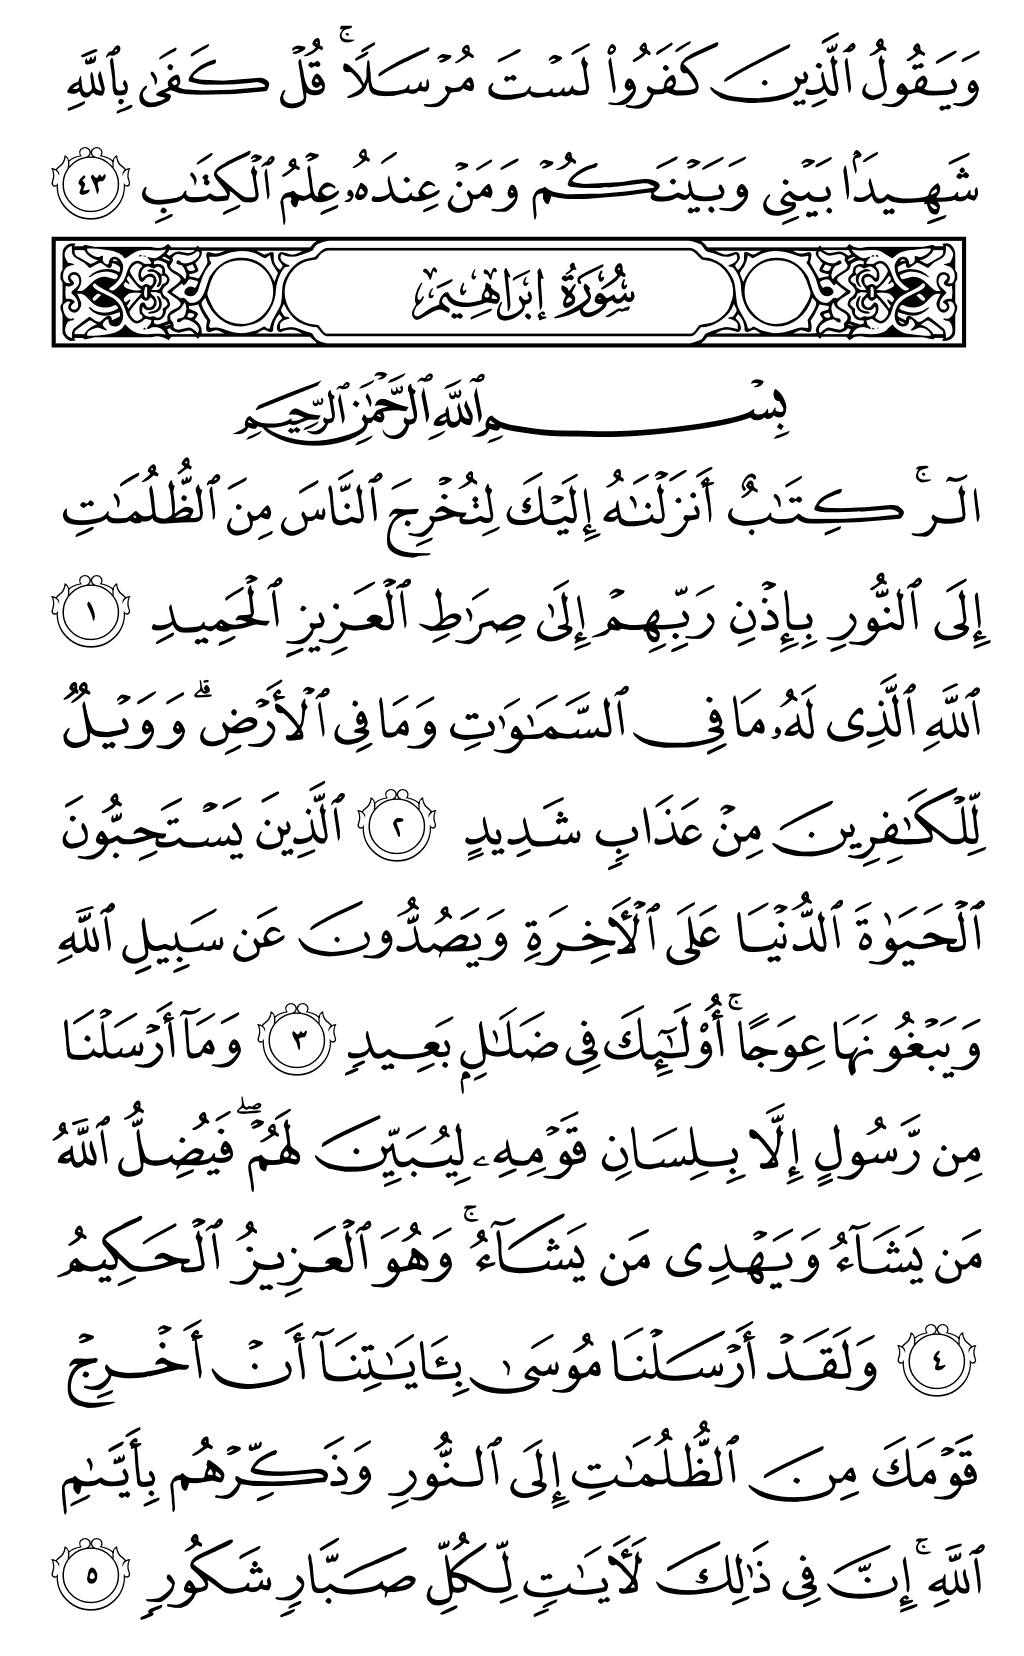 الصفحة رقم 255 من القرآن الكريم